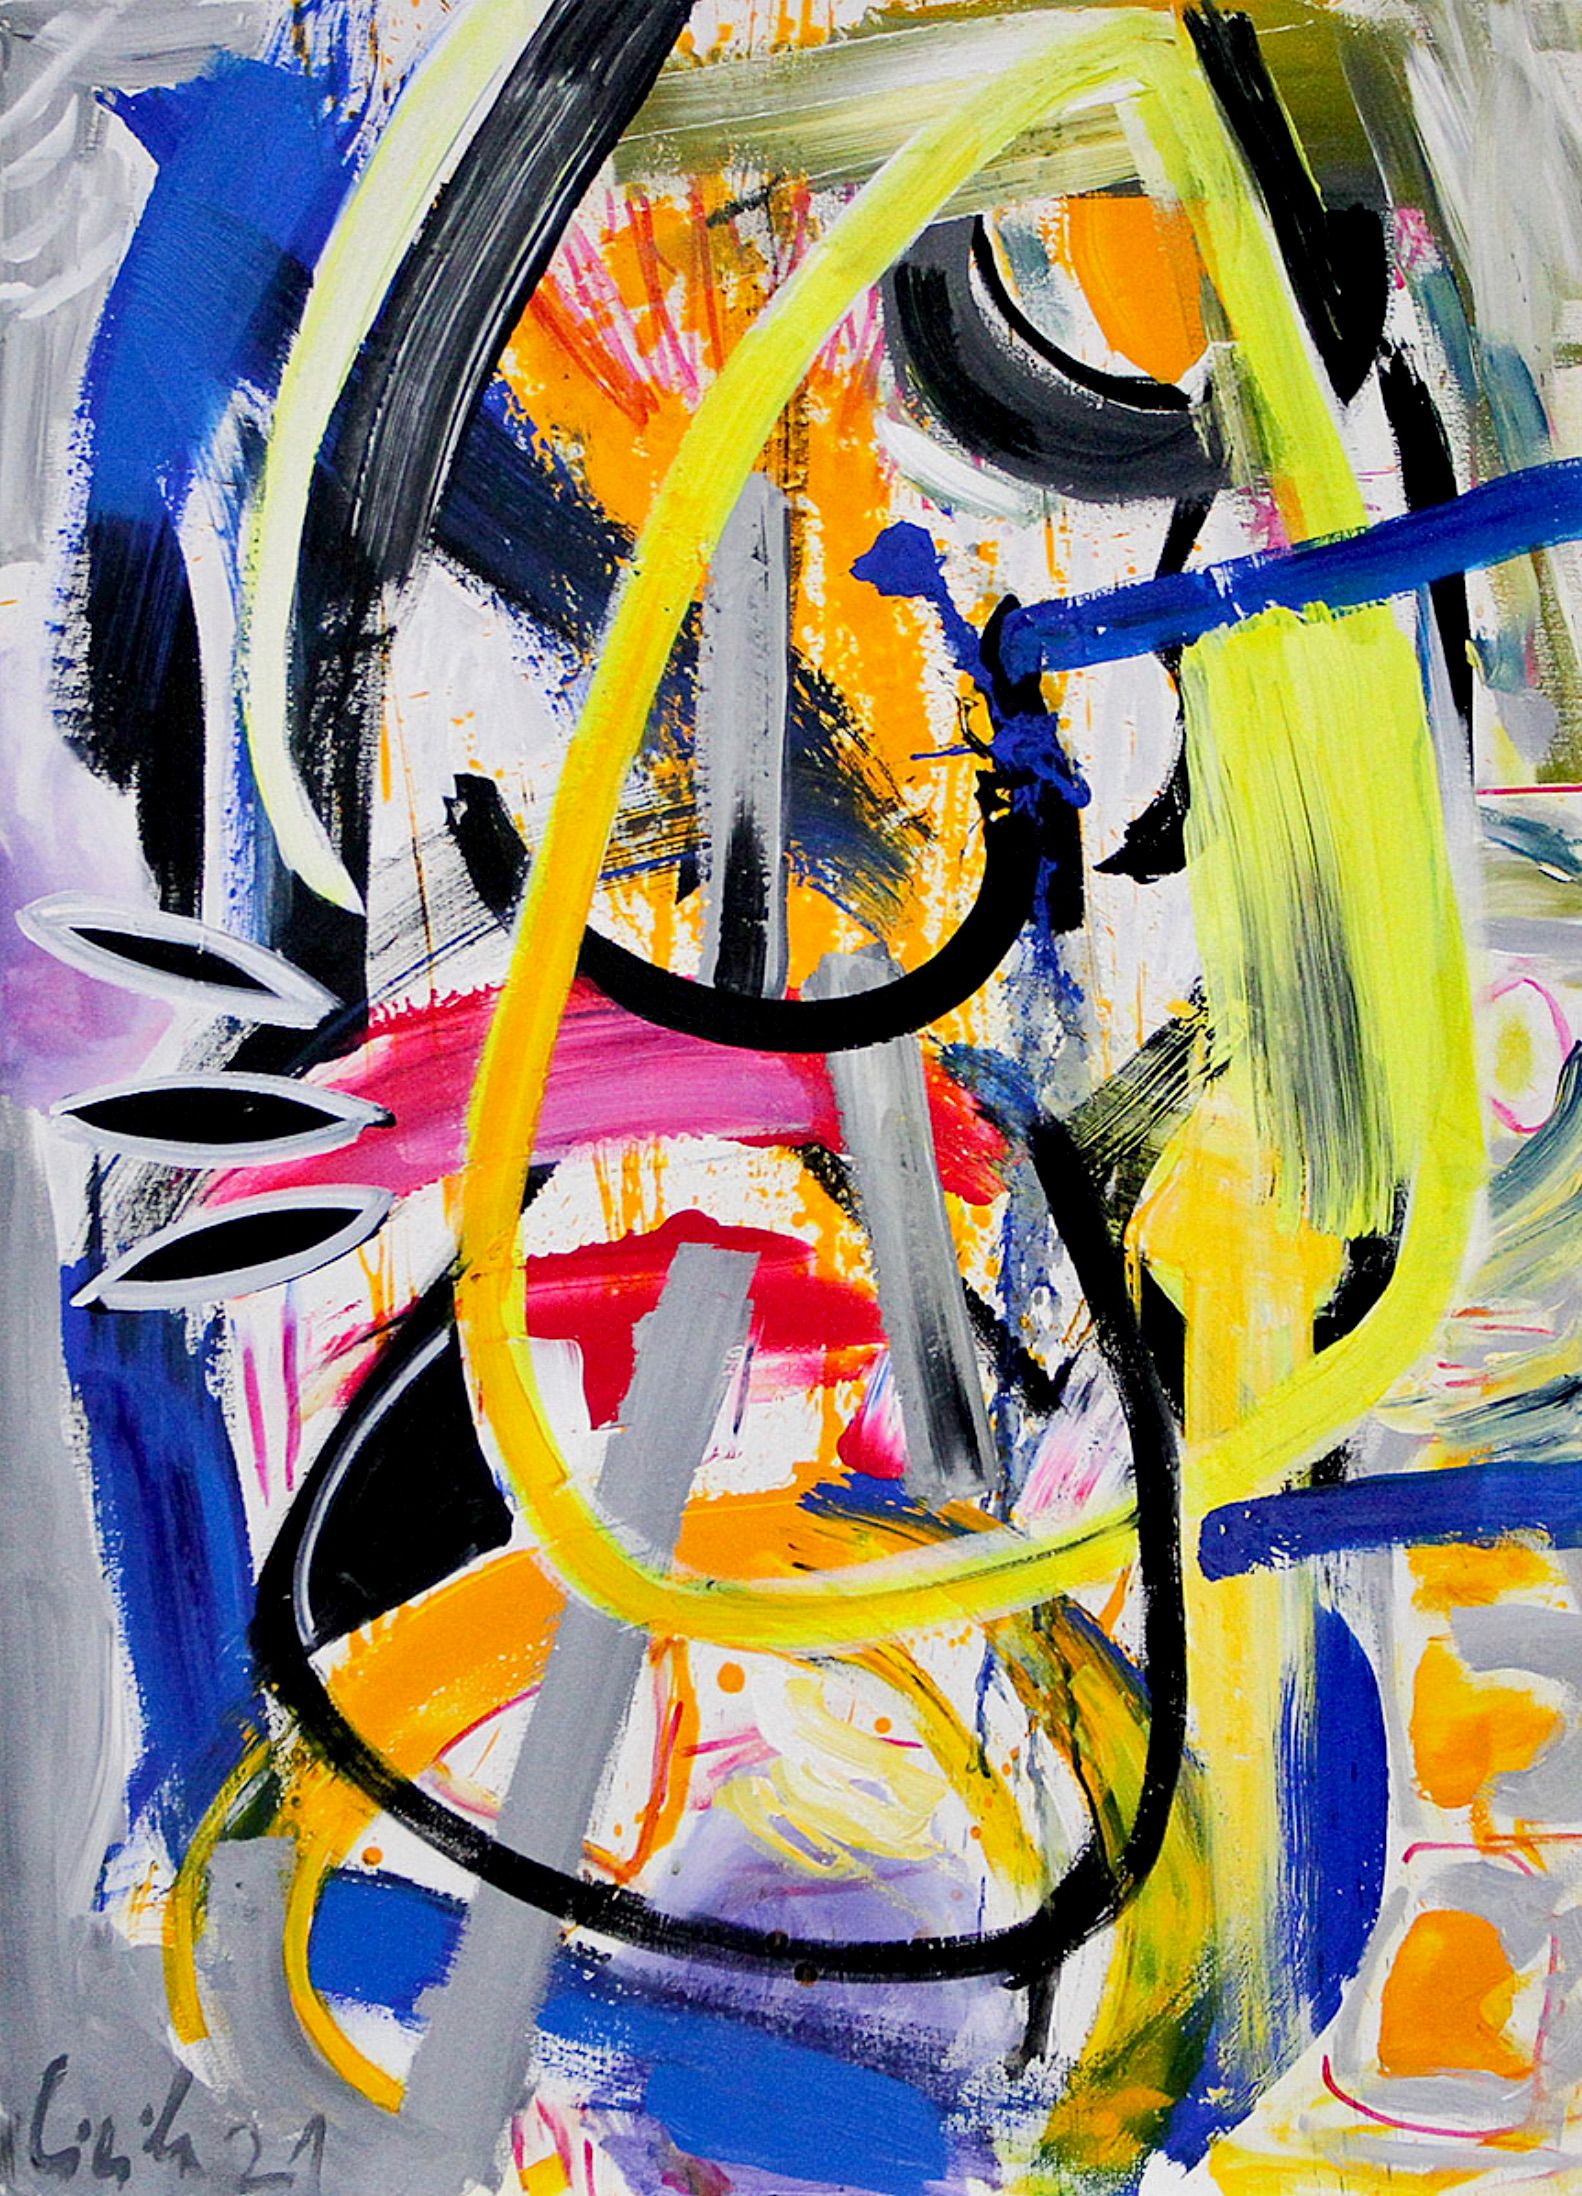 MECESLA Maciej Cieśla, "Cuadro inspirado en la música-Fatboy Slim 3", Pintura abstracta de colores sobre lienzo